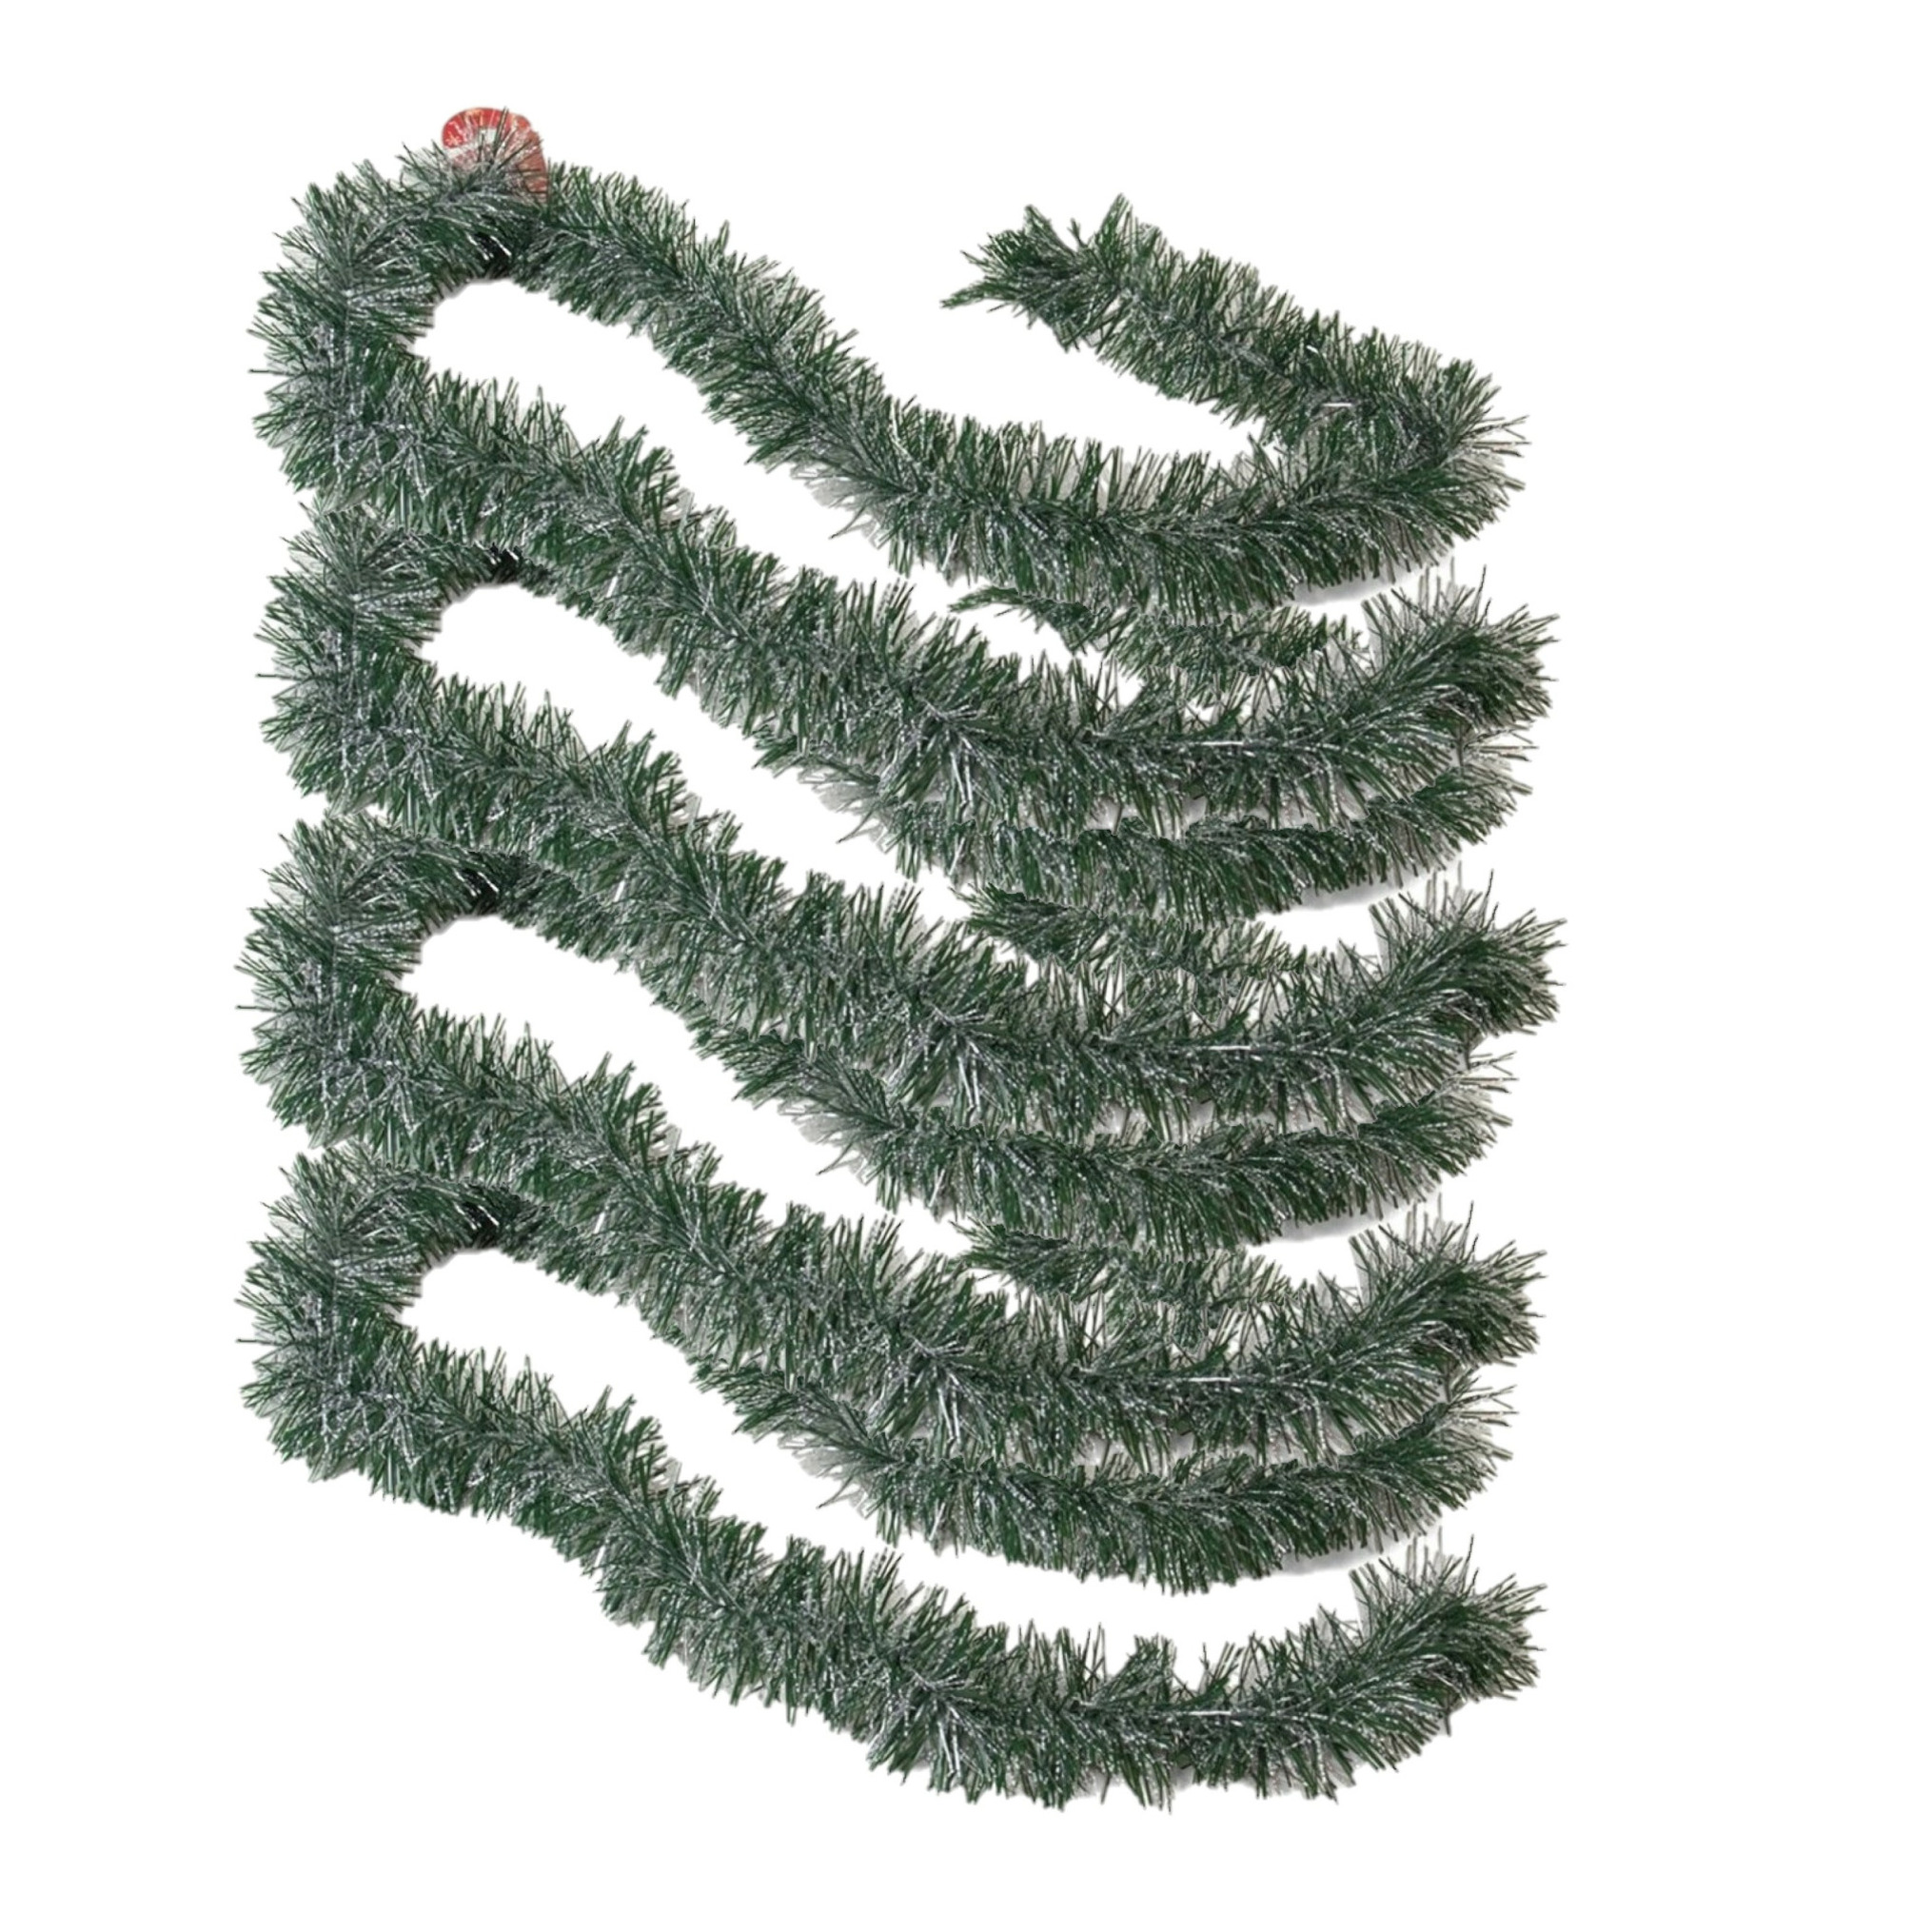 4x stuks kerstboom folie slingers-lametta guirlandes van 180 x 7 cm in de kleur groen met sneeuw